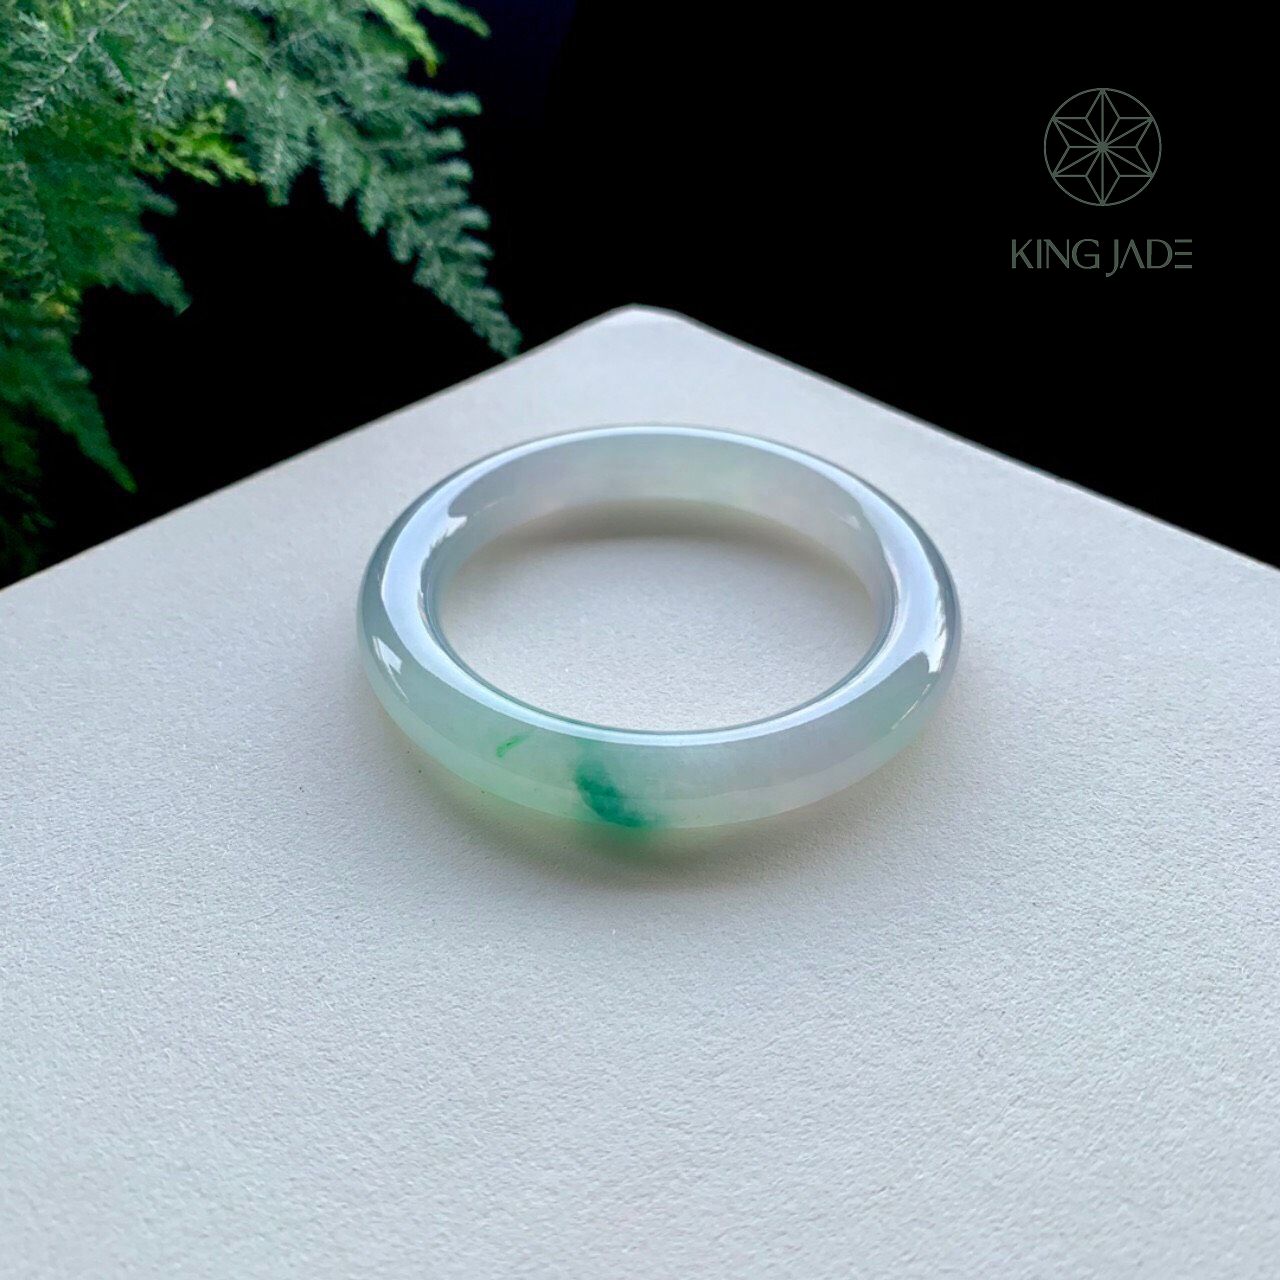 Vòng Ngọc Phỉ Thúy King Jade 028 - Đơn Giản nhưng không Đơn Điệu